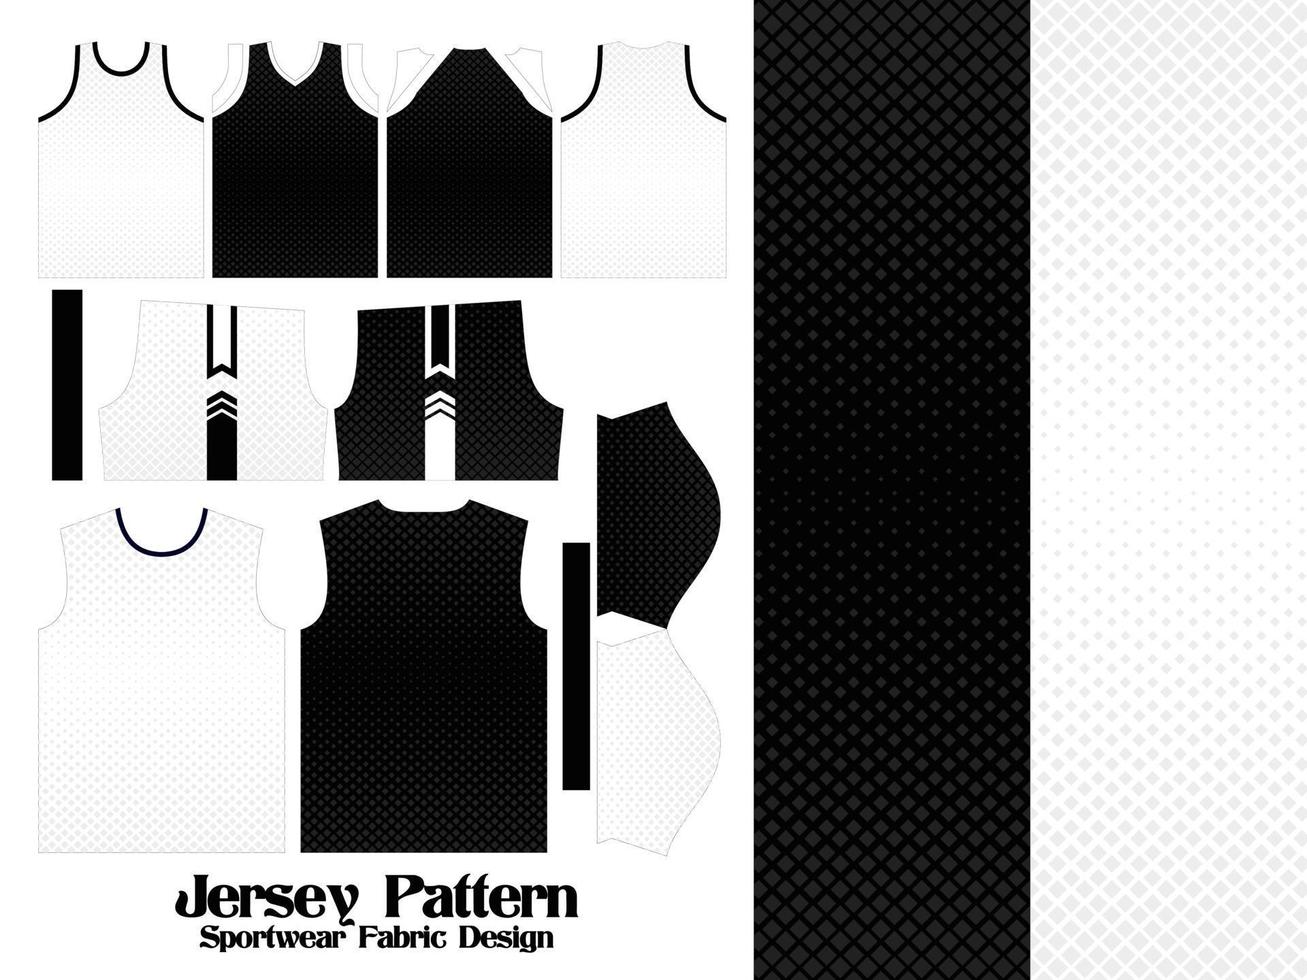 jersey mönster textil för sport t-shirt, fotboll, fotboll, e-sport jersey mockup för sportkläder, fram- och baksidan uniform designillustration vektor